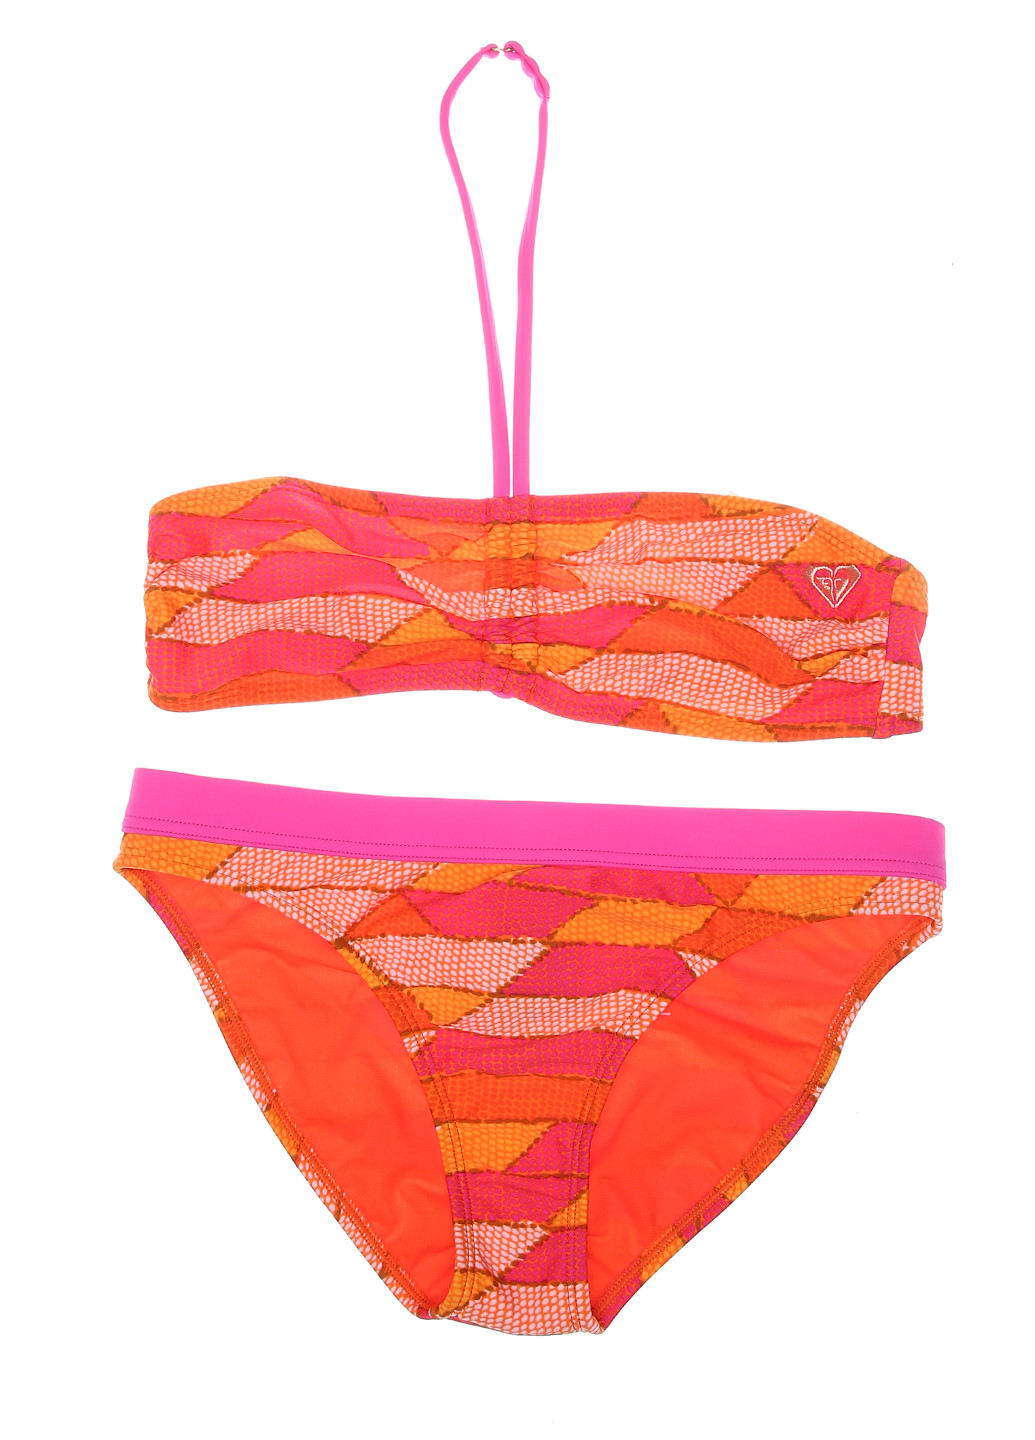 Оранжевый летний купальник (лиф, трусы) бандо Roxy